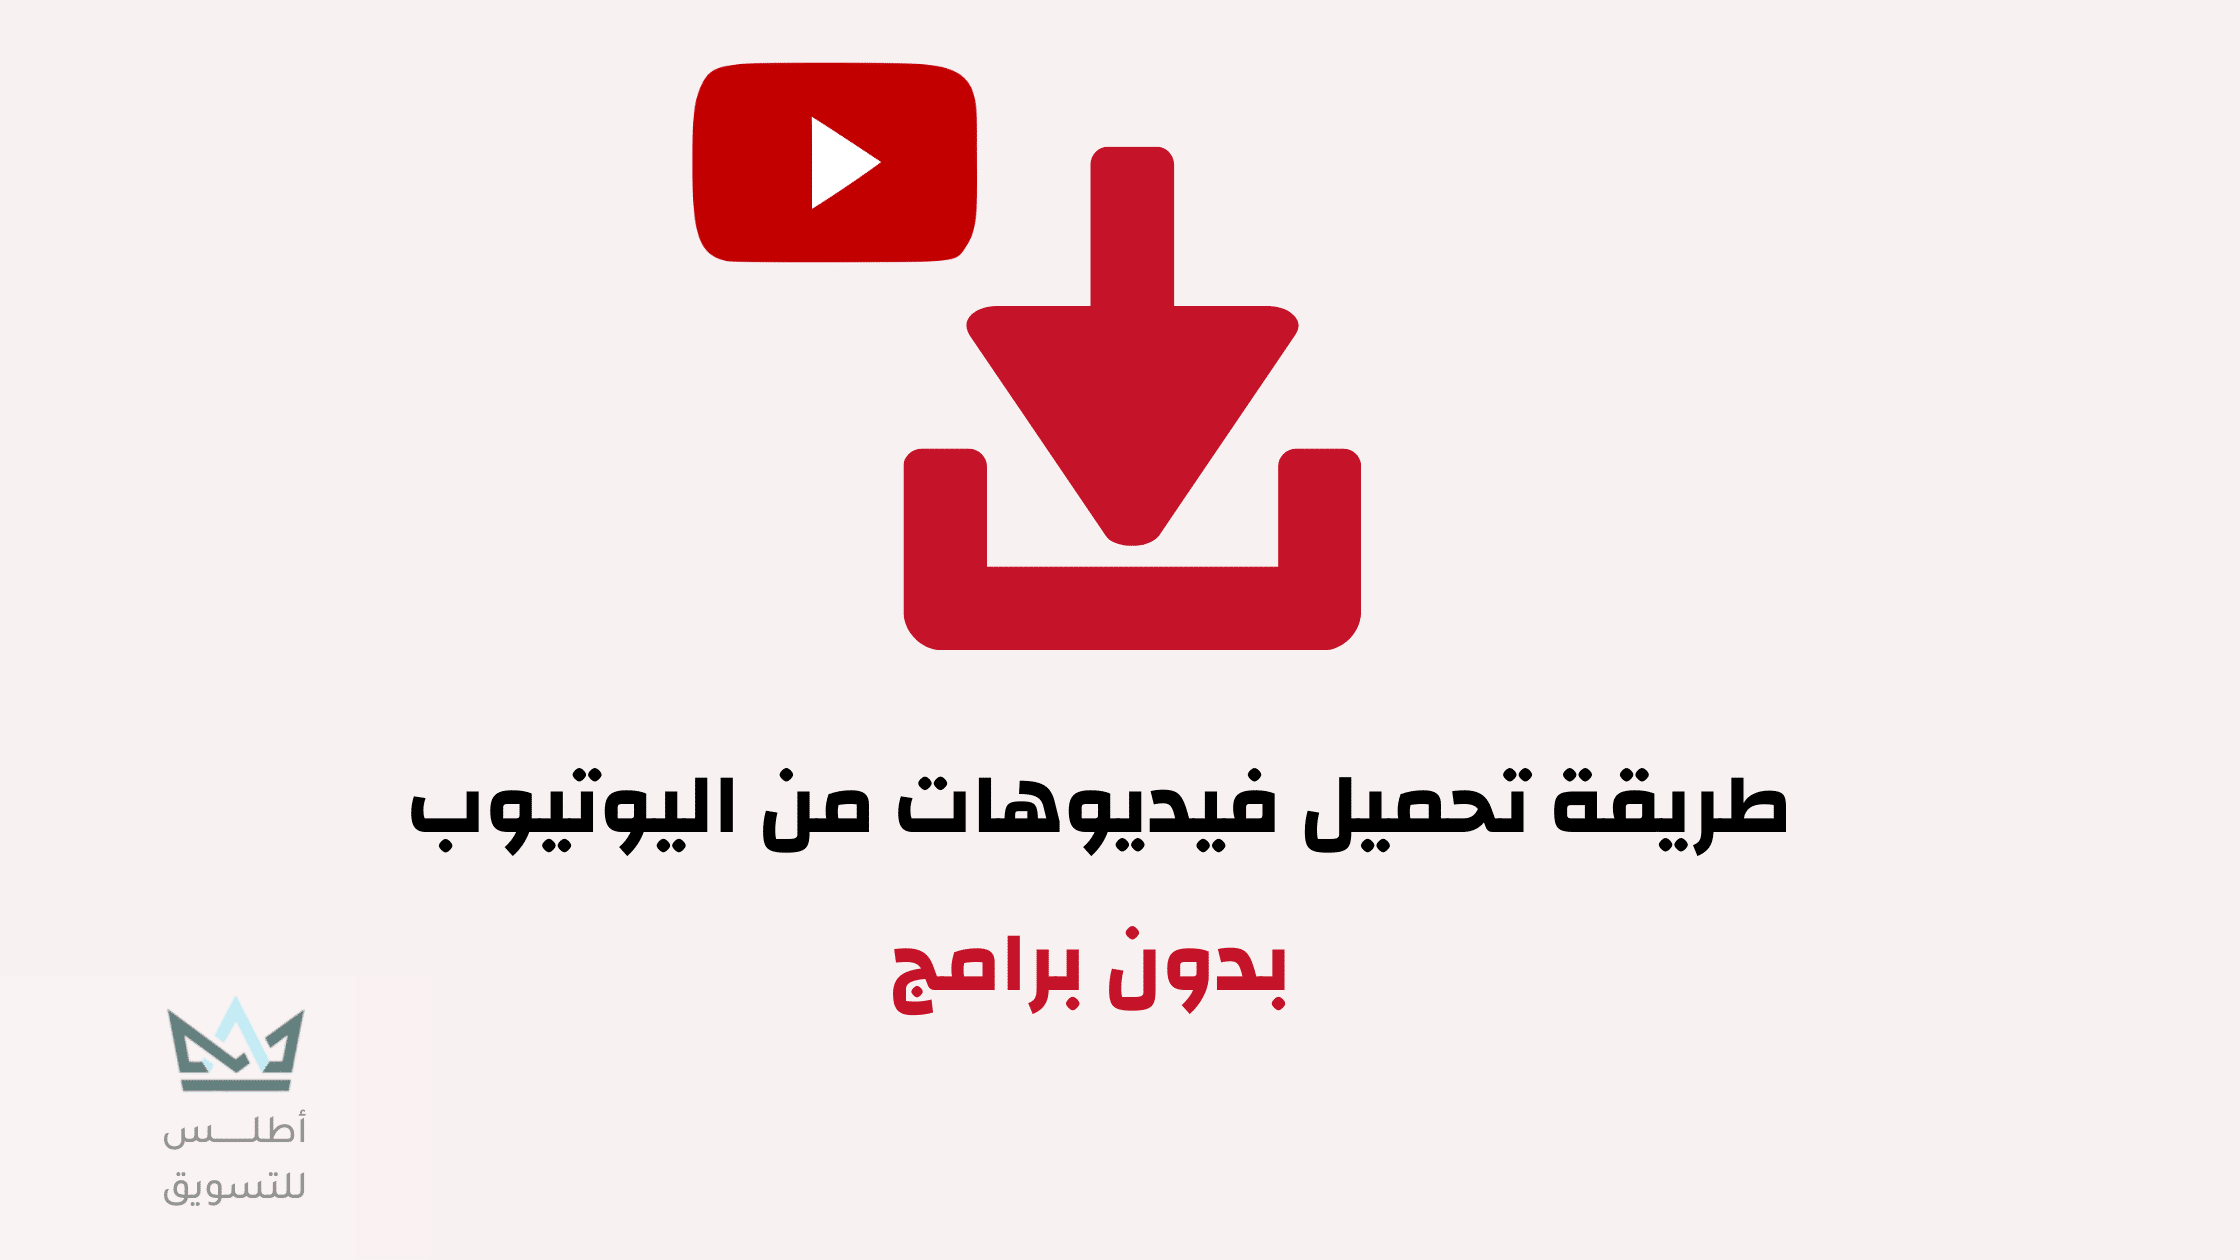 طريقة تحميل الفيديو من اليوتيوب بدون برامج